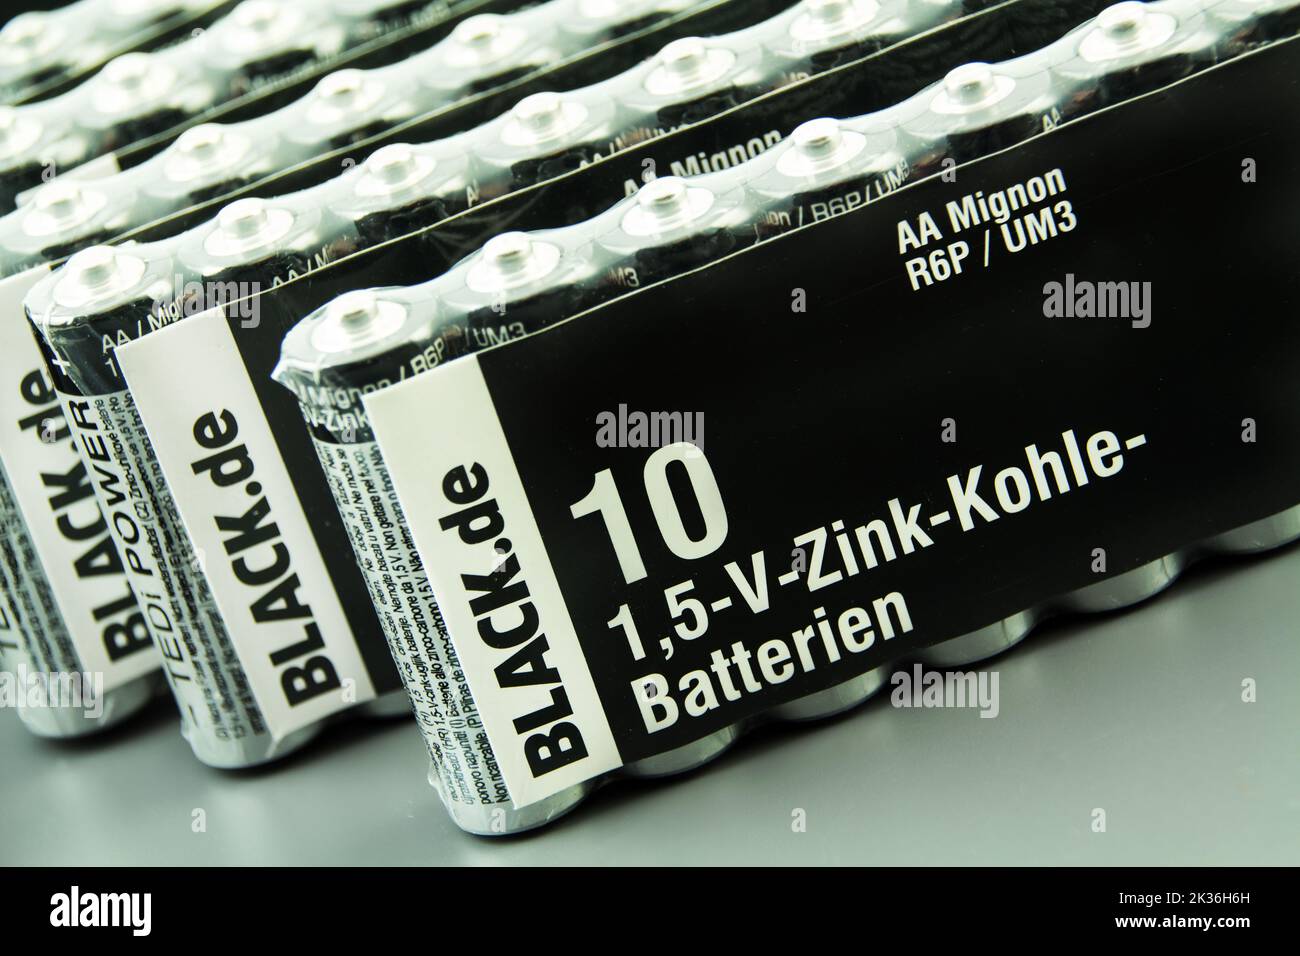 Hamburg, Germany - September 25  2022: Black Batterie Mignon  AA close up - Black Mignon battery  cell AA close up Stock Photo